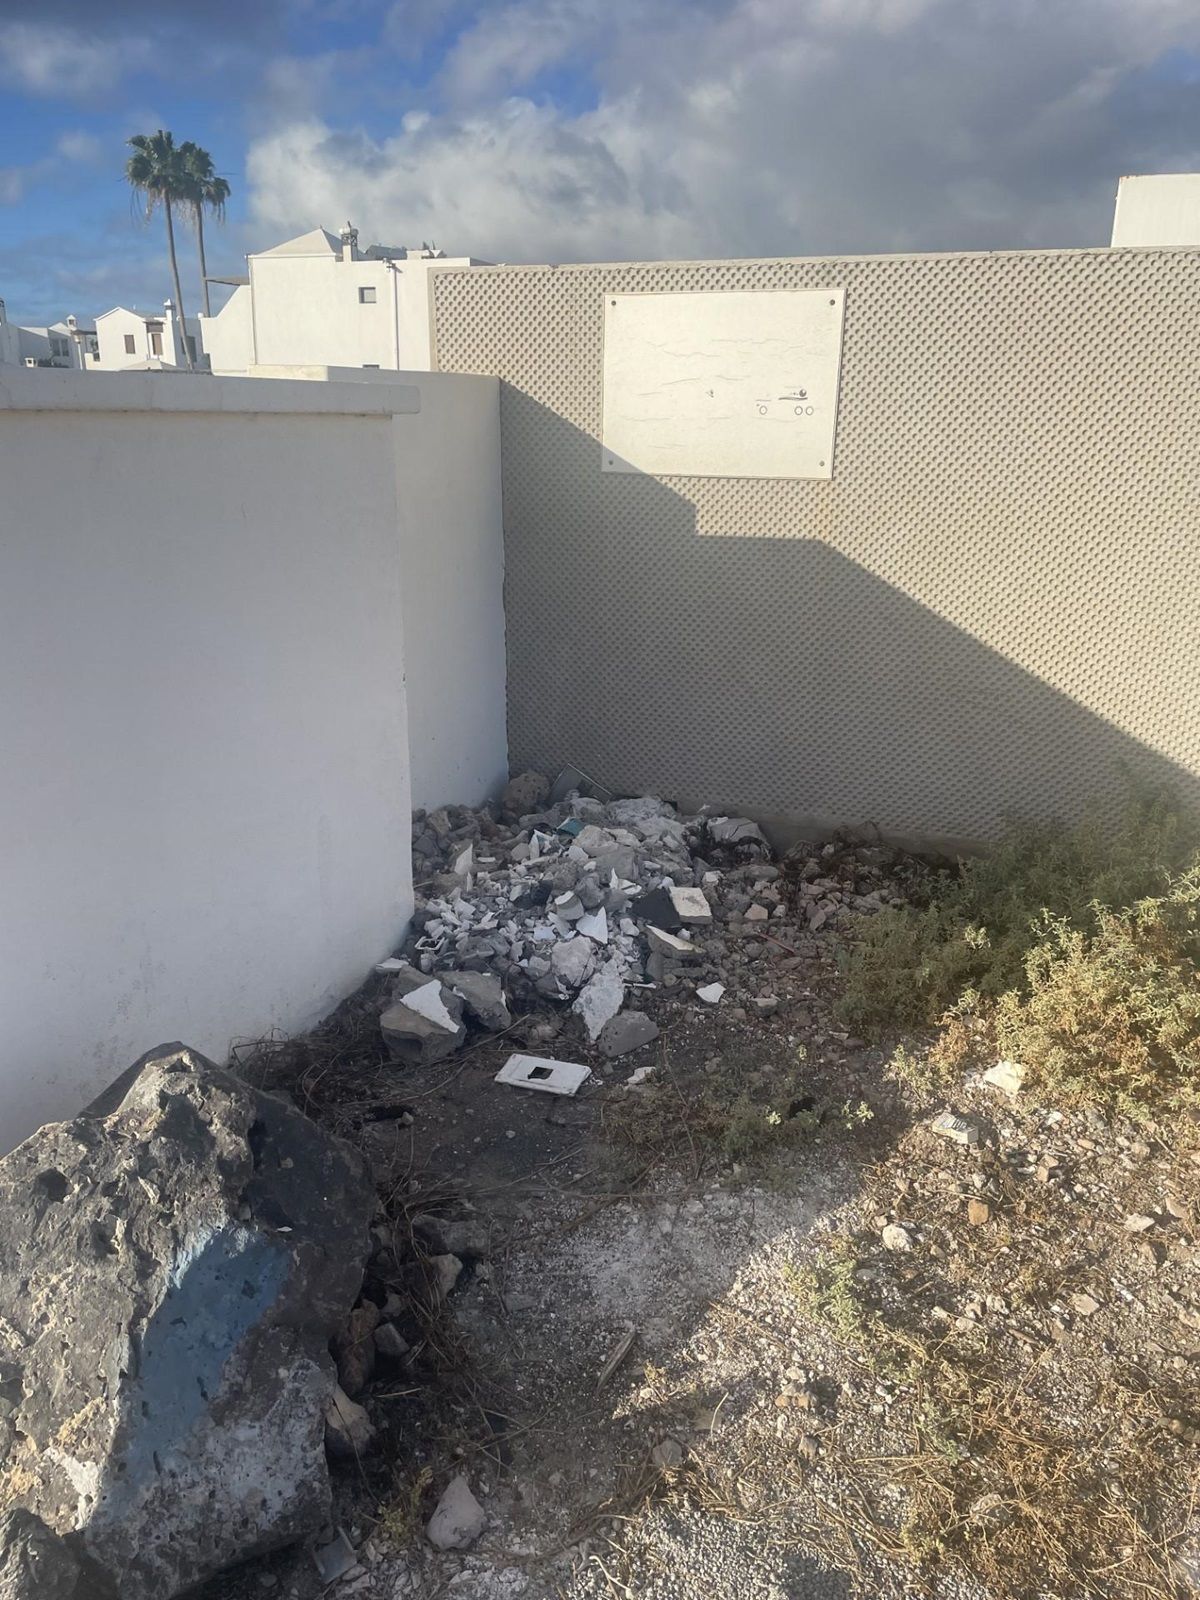 Los escombros depositados cerca de los contenedores en Tías